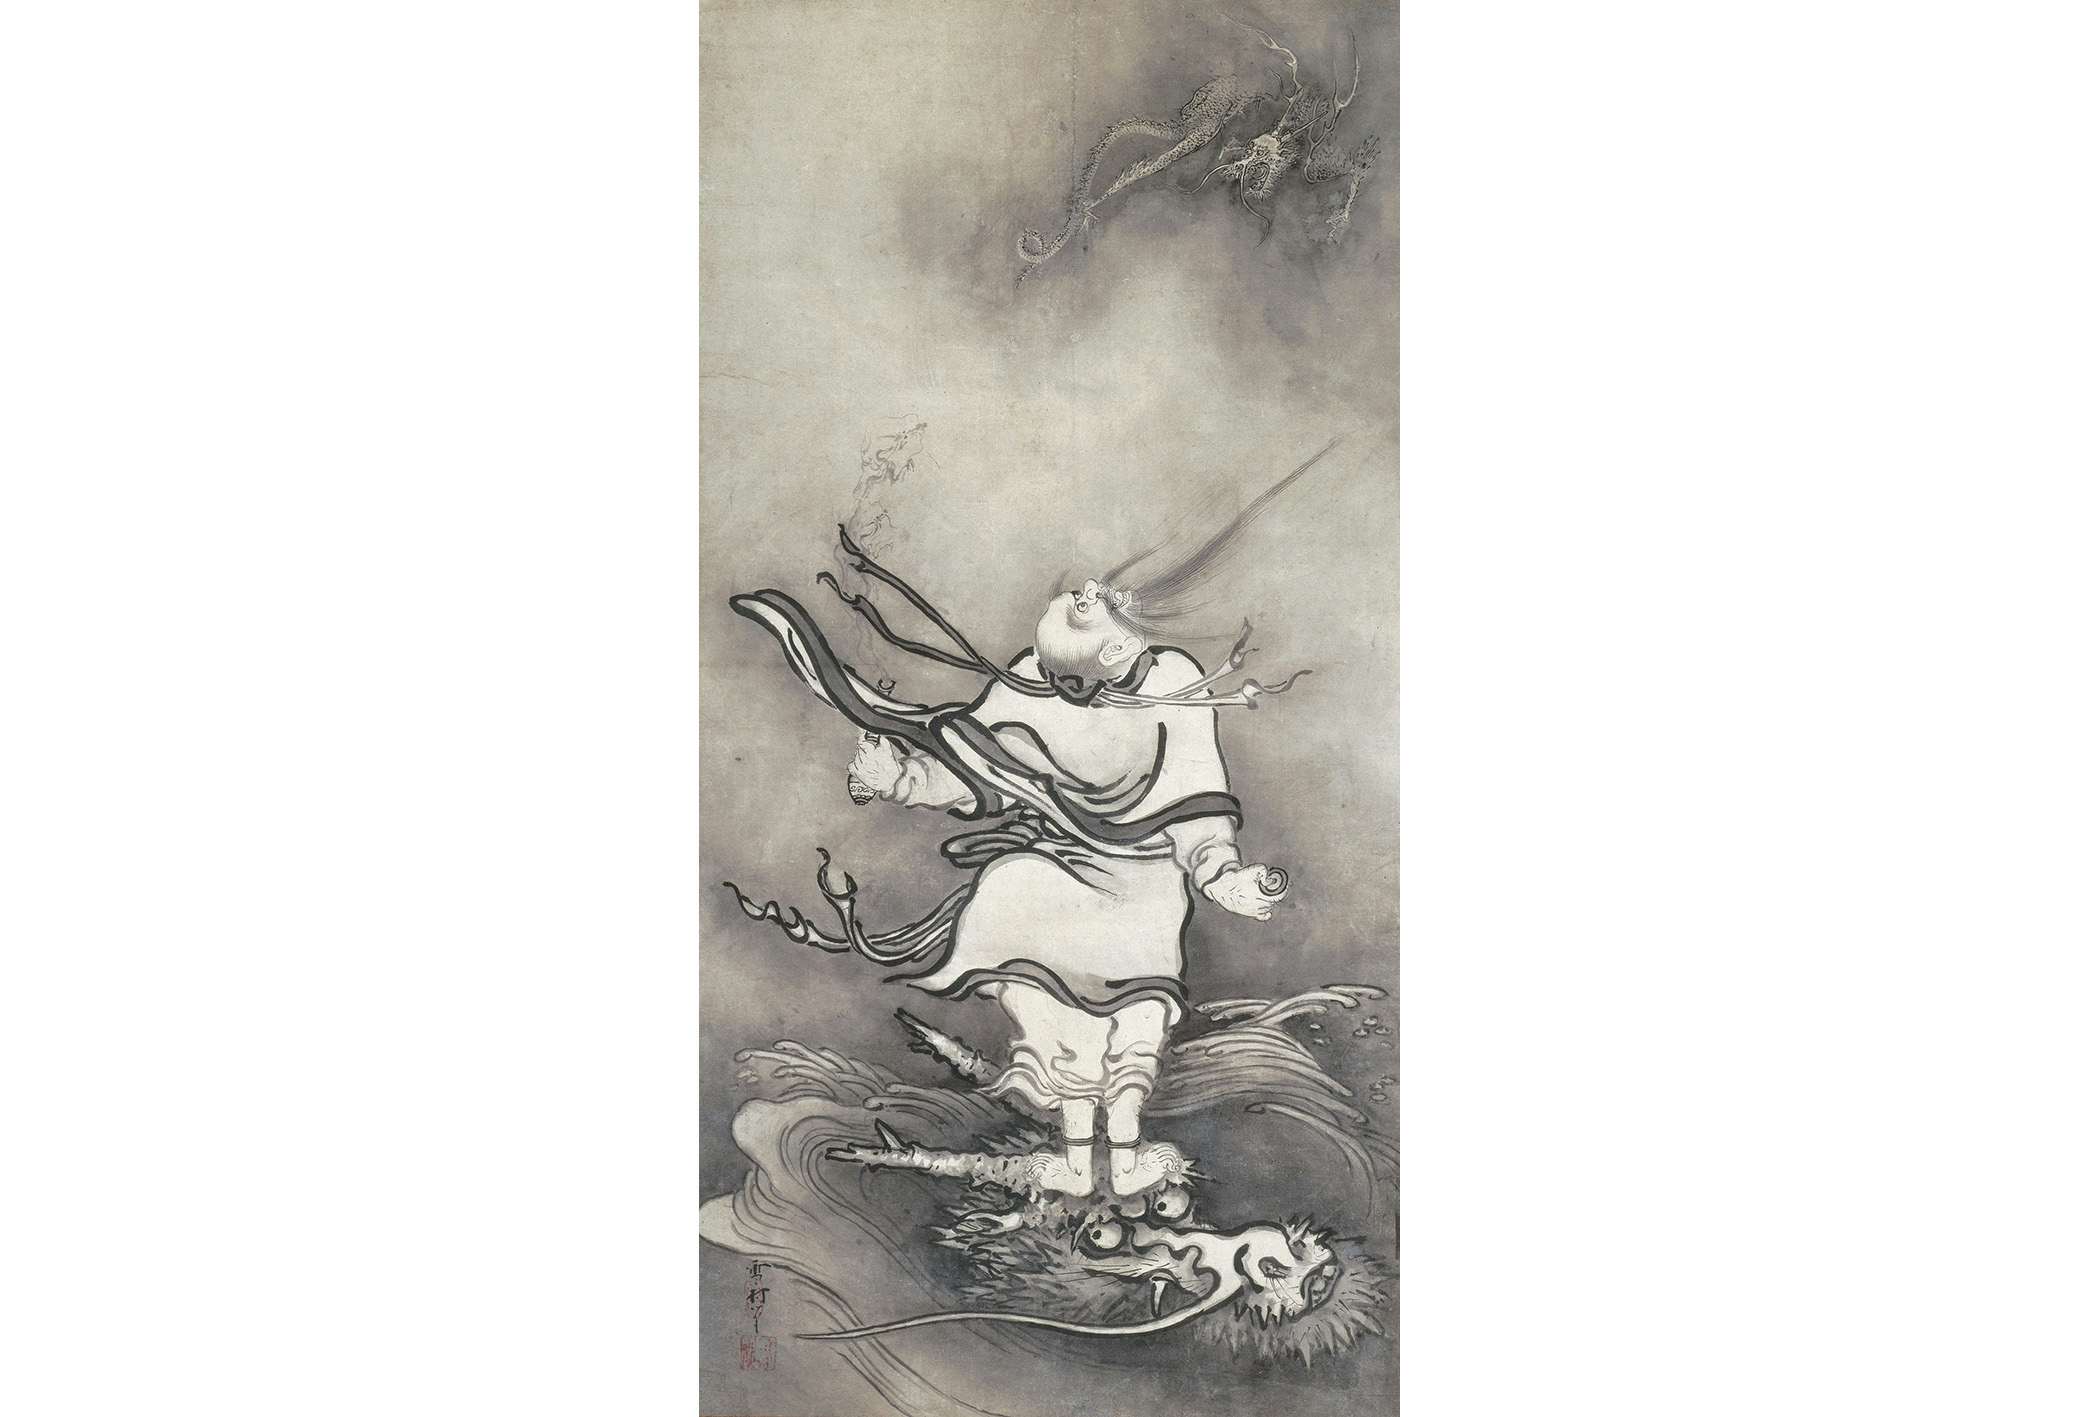 元祖「奇想の画家」、雪村が描いた破天荒な水墨画。15年ぶりの大回顧展